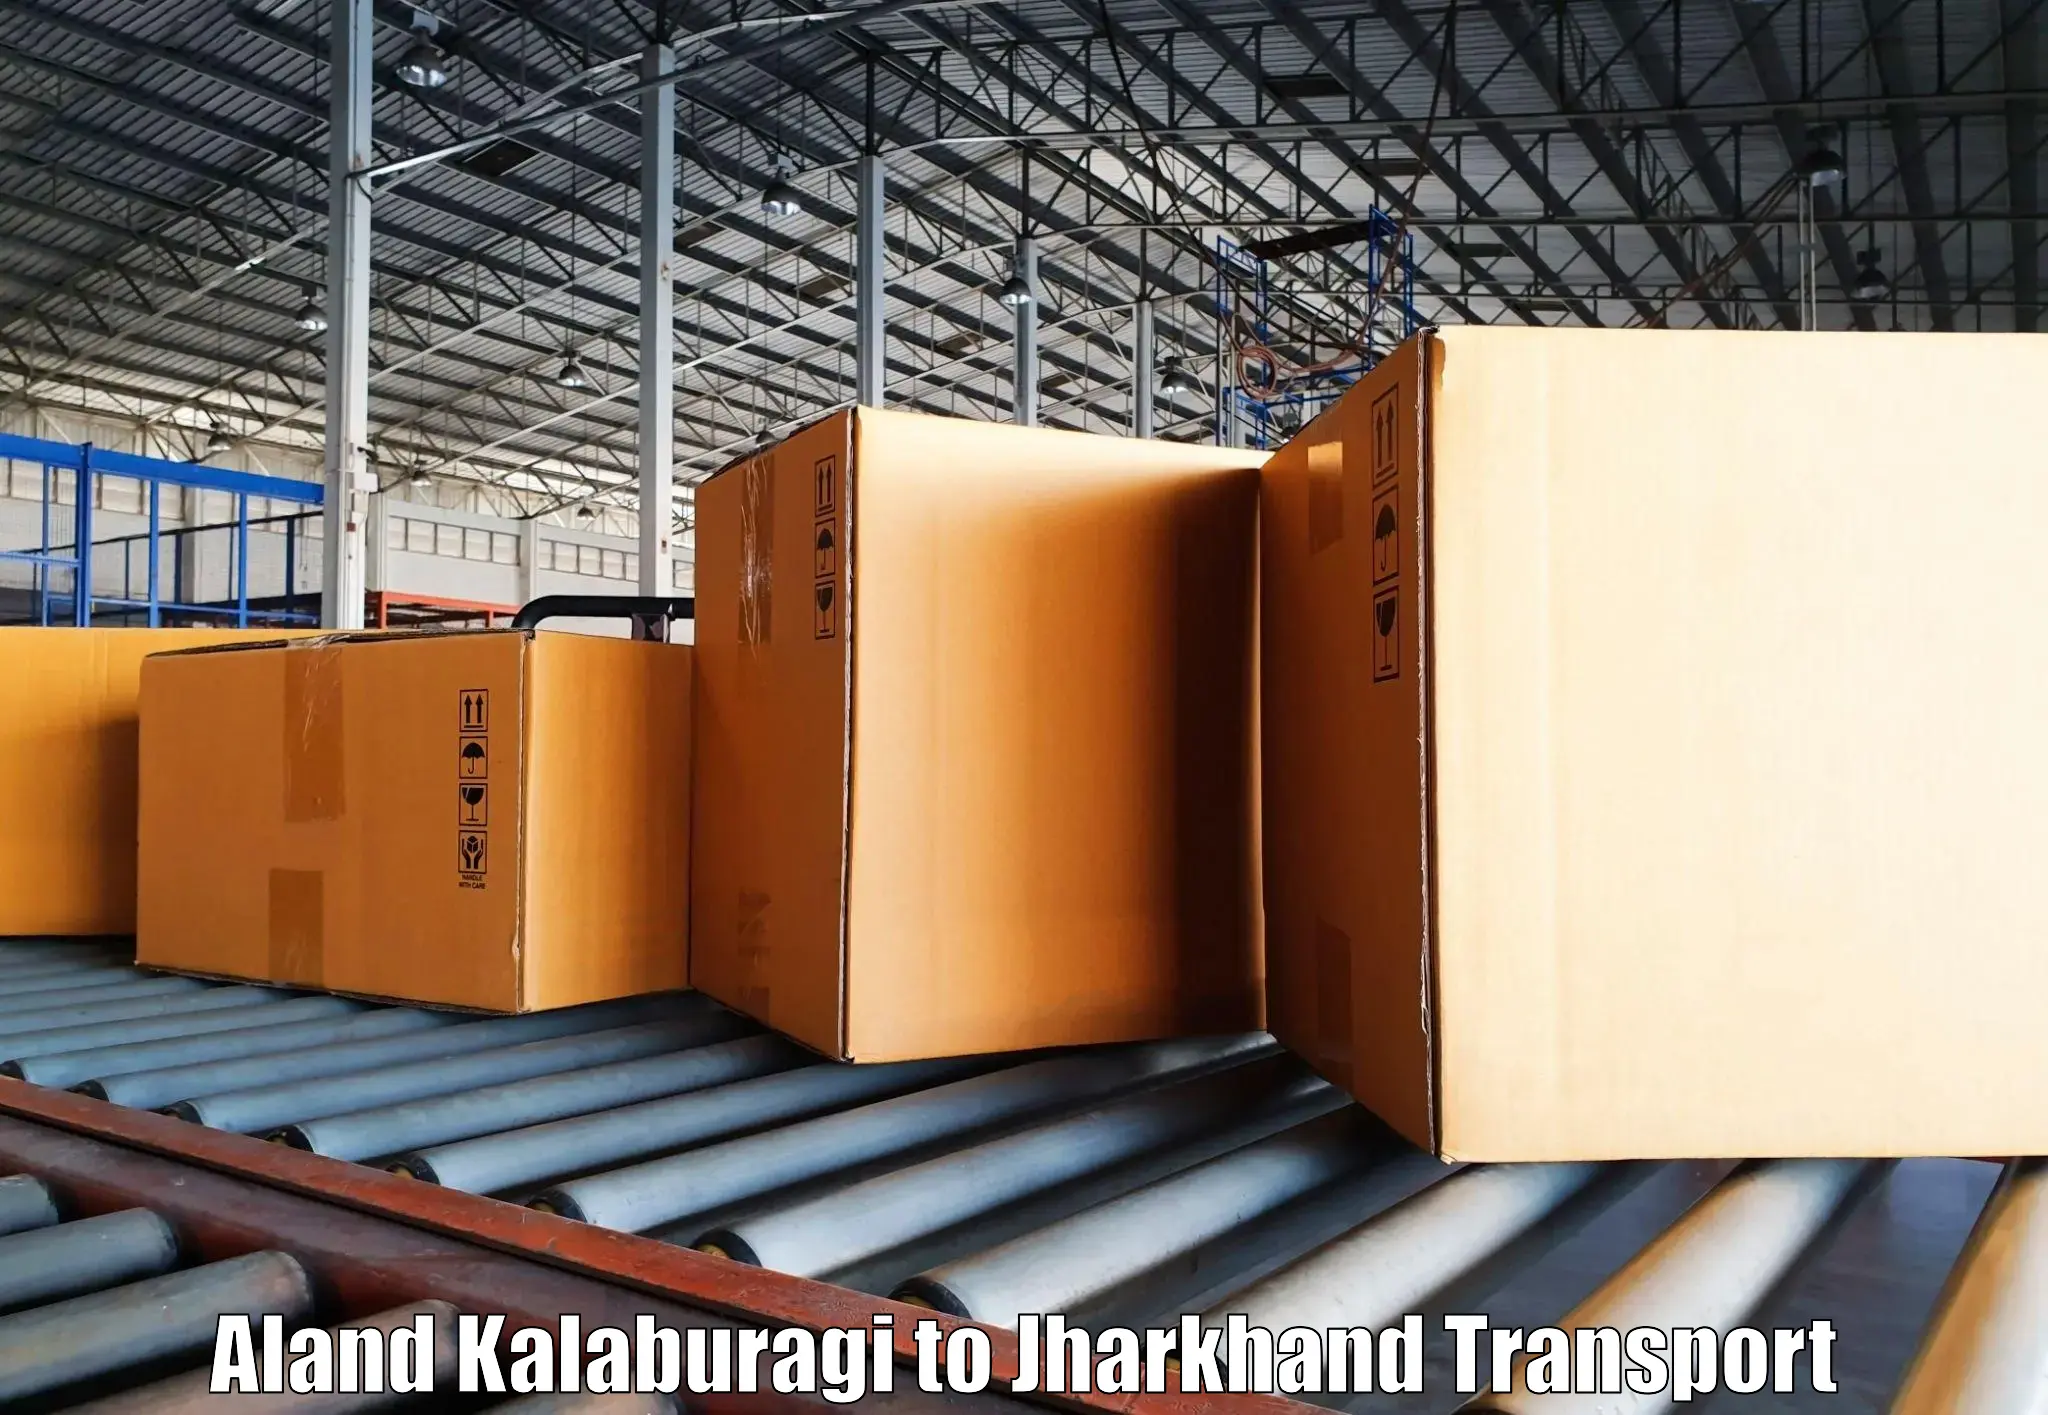 Container transport service Aland Kalaburagi to Tamar